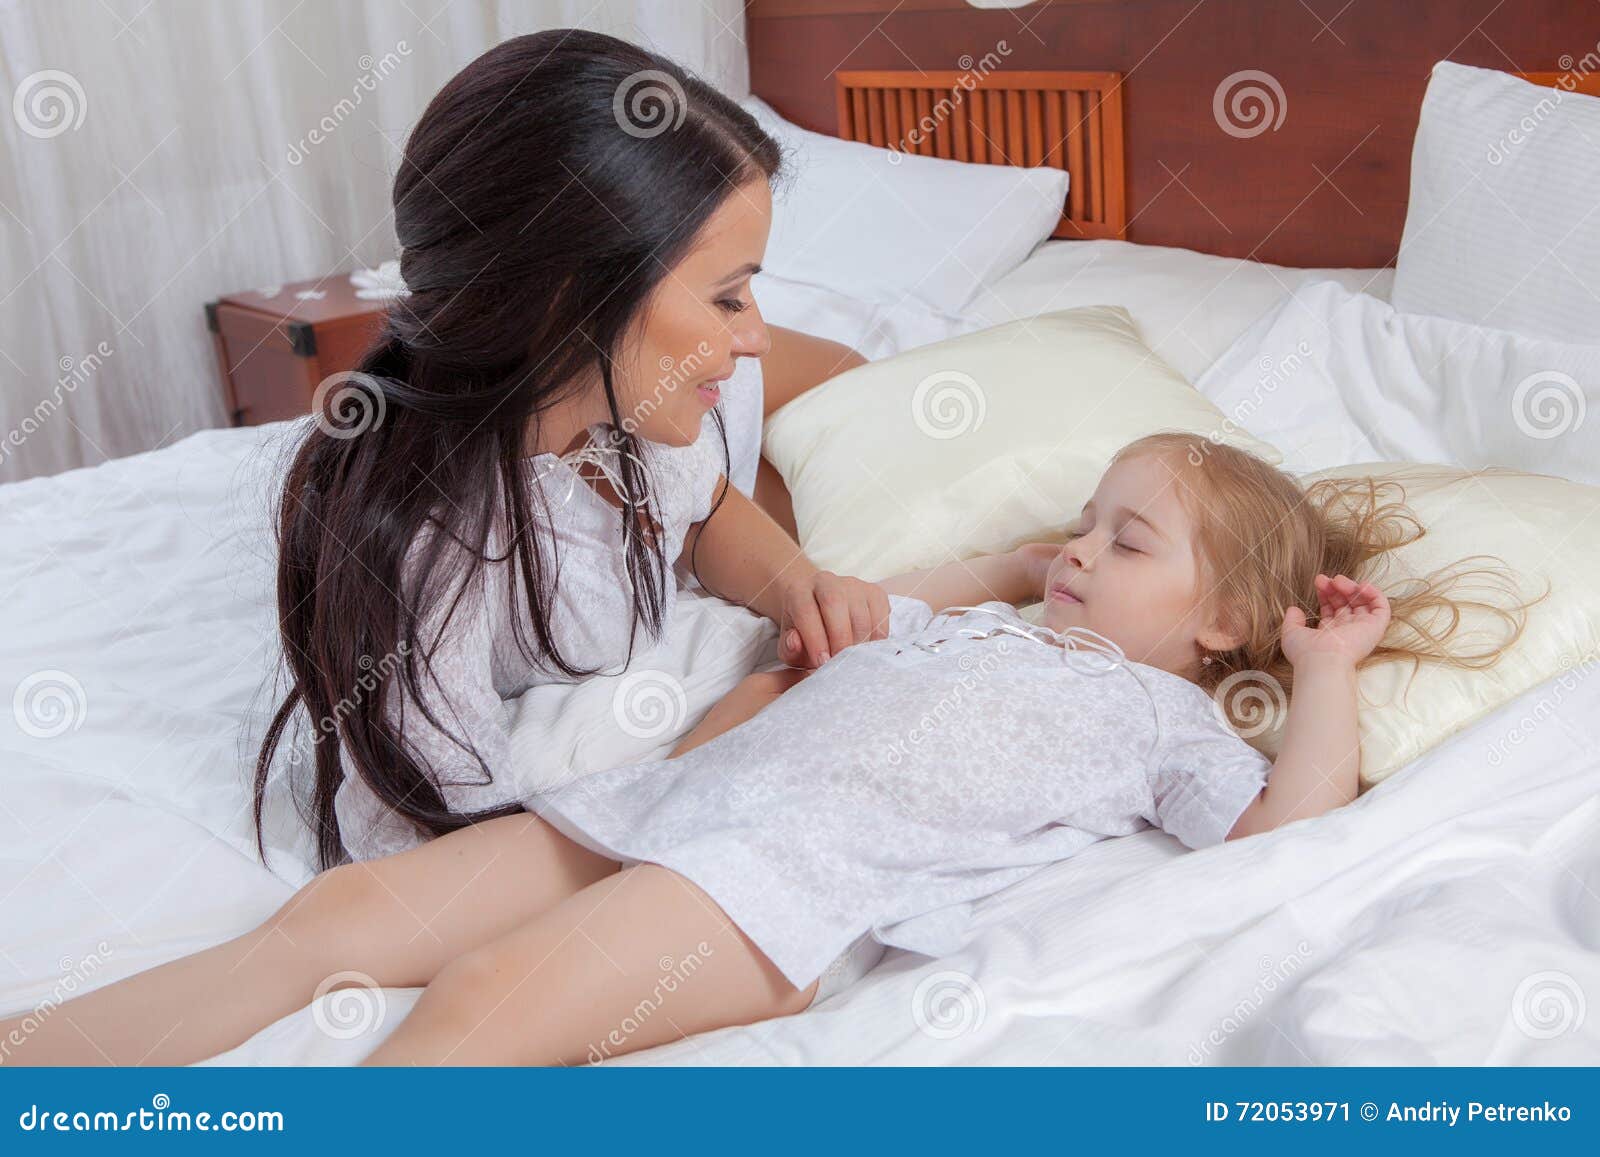 Мама с дочкой в постели. Мама с дочкой на кровати. Мамас дочкой накрлвати. Фотосессия с дочкой на кровати. Девочка и мама в постели -.